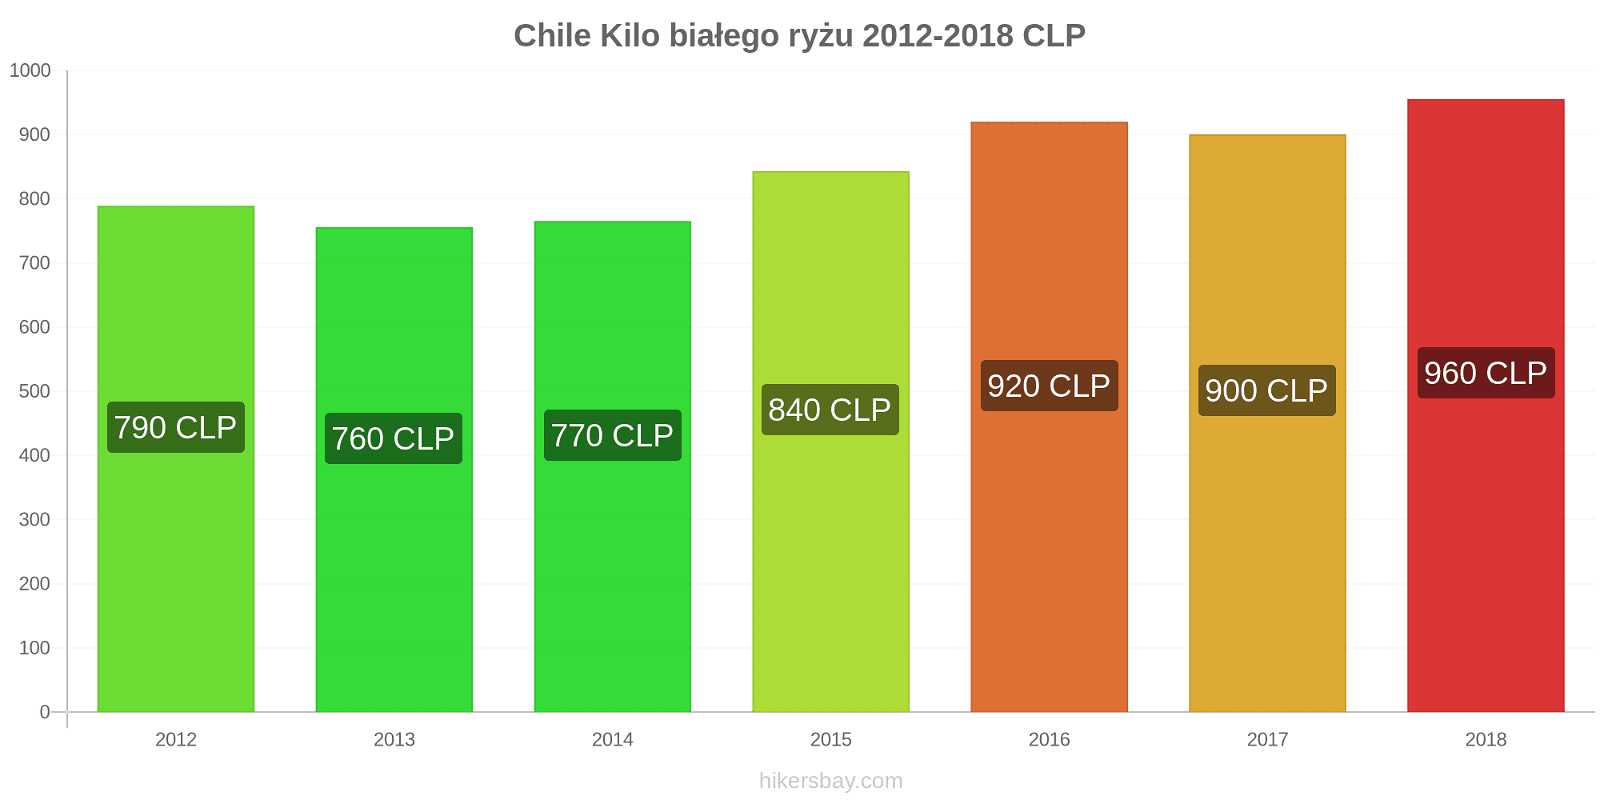 Chile zmiany cen Kilo białego ryżu hikersbay.com